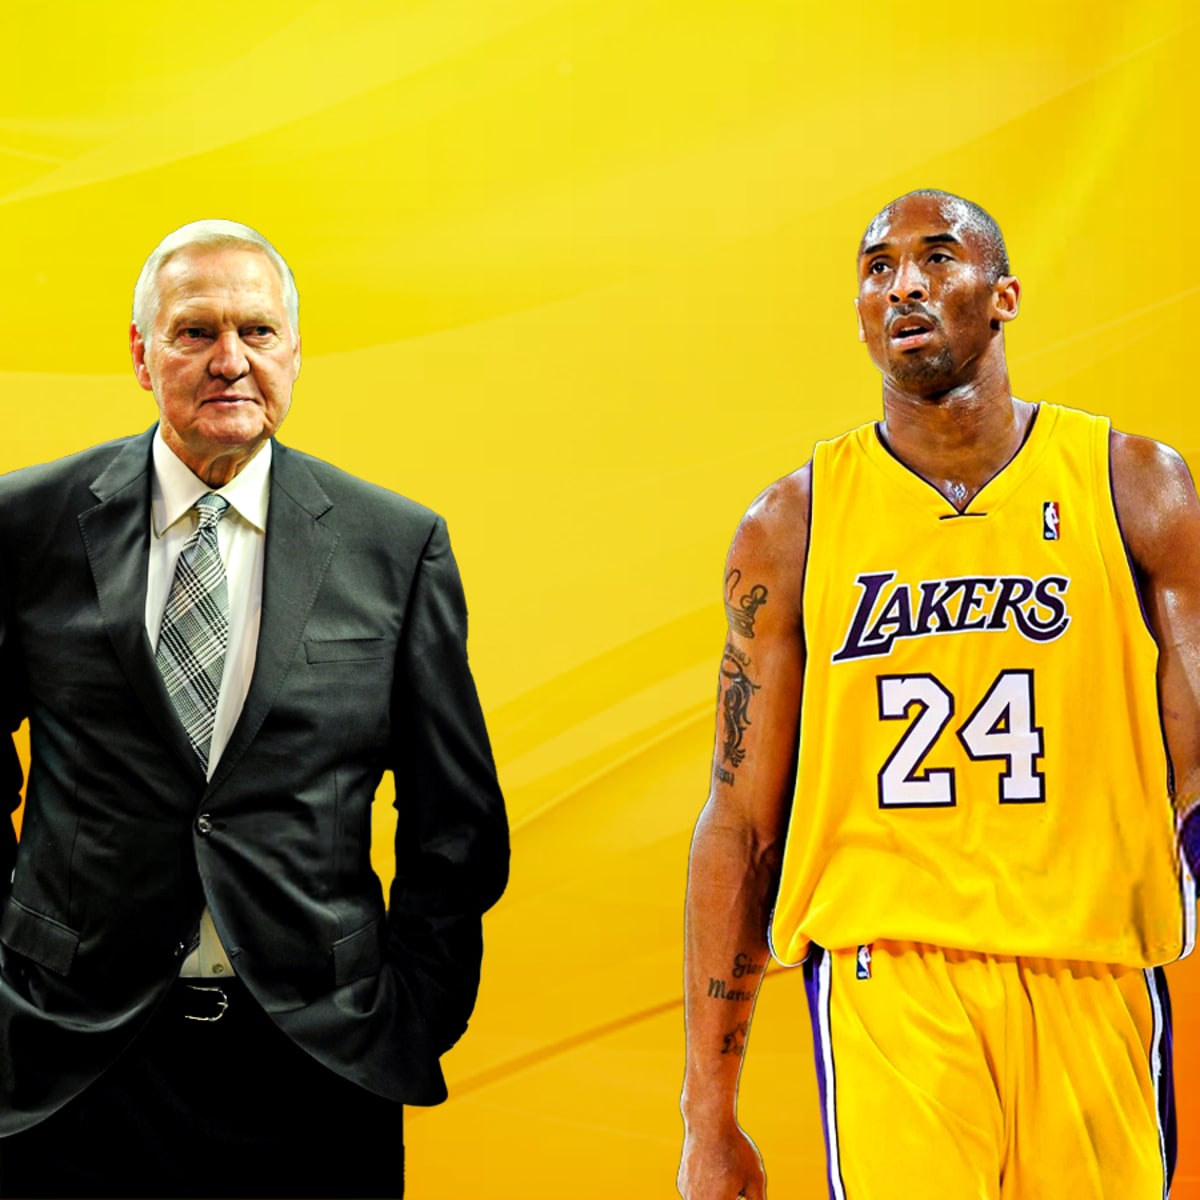 ESPN Honoring Legacy of Kobe Bryant in Sunday Night Prime-time SportsCenter  Special - ESPN Press Room U.S.